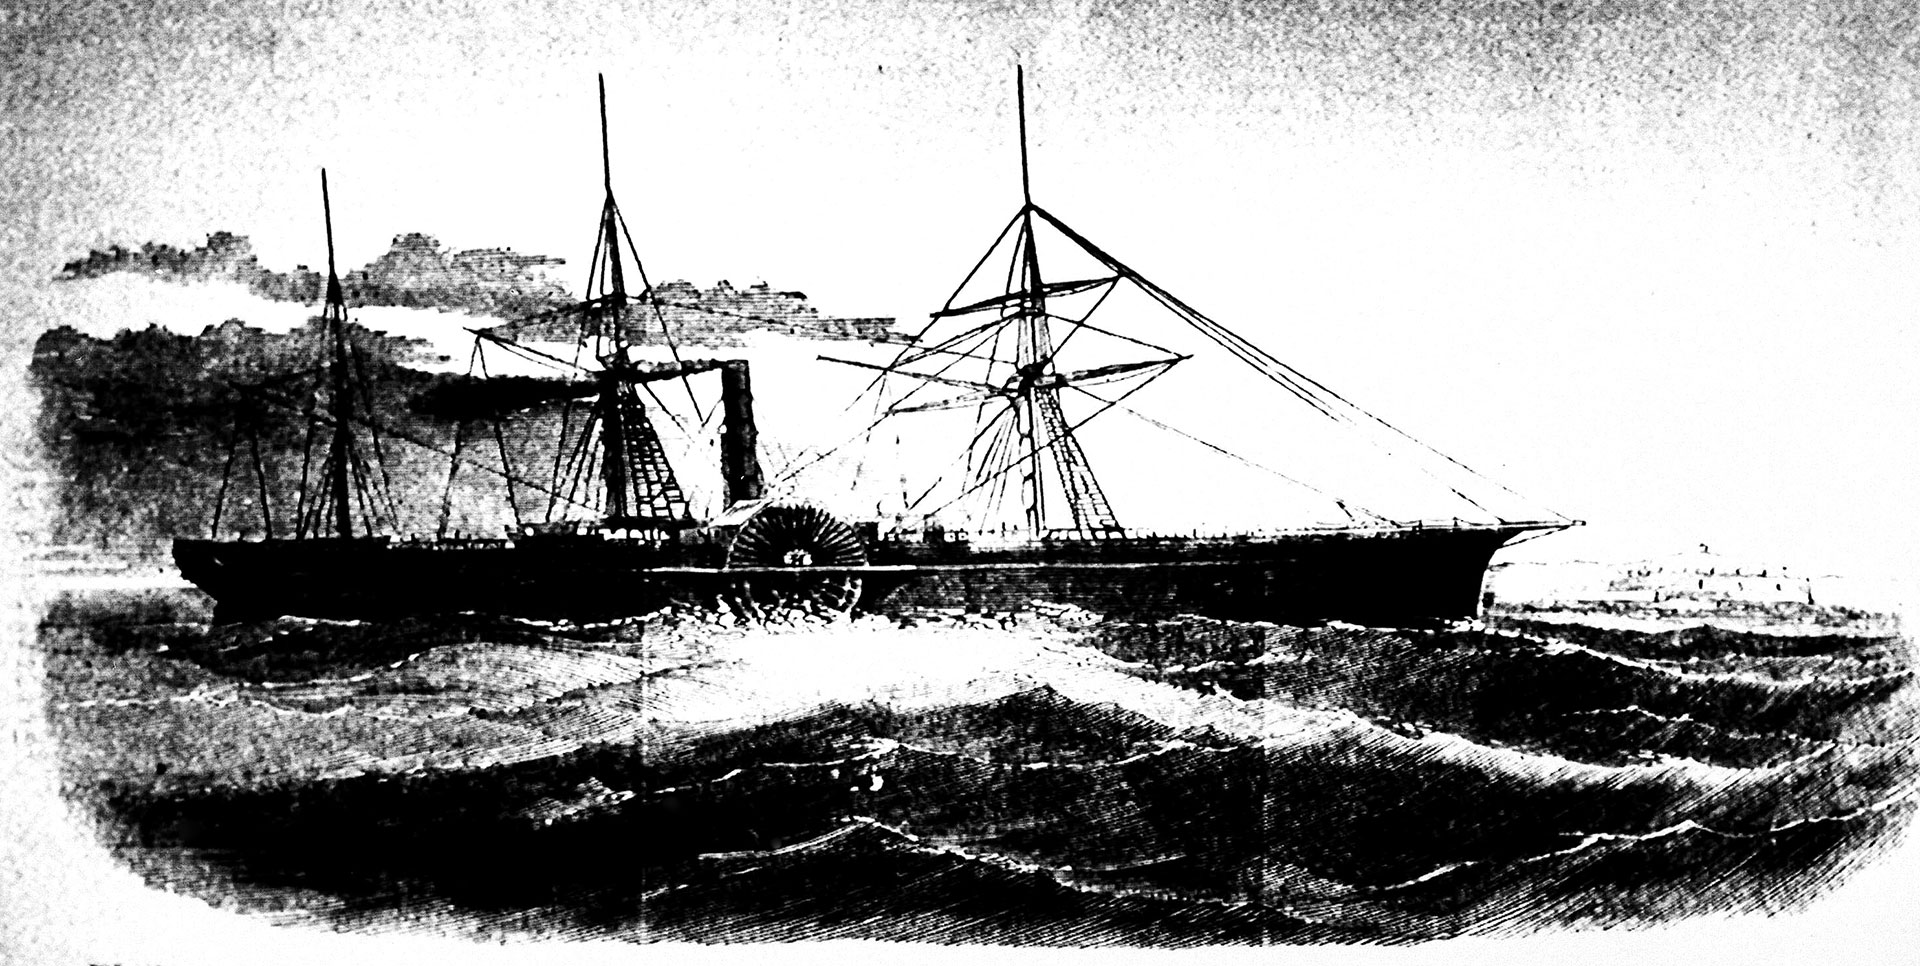 ARCHIVO - Este dibujo muestra el barco de correo estadounidense S.S. Central America (Biblioteca del Congreso a través de AP)

